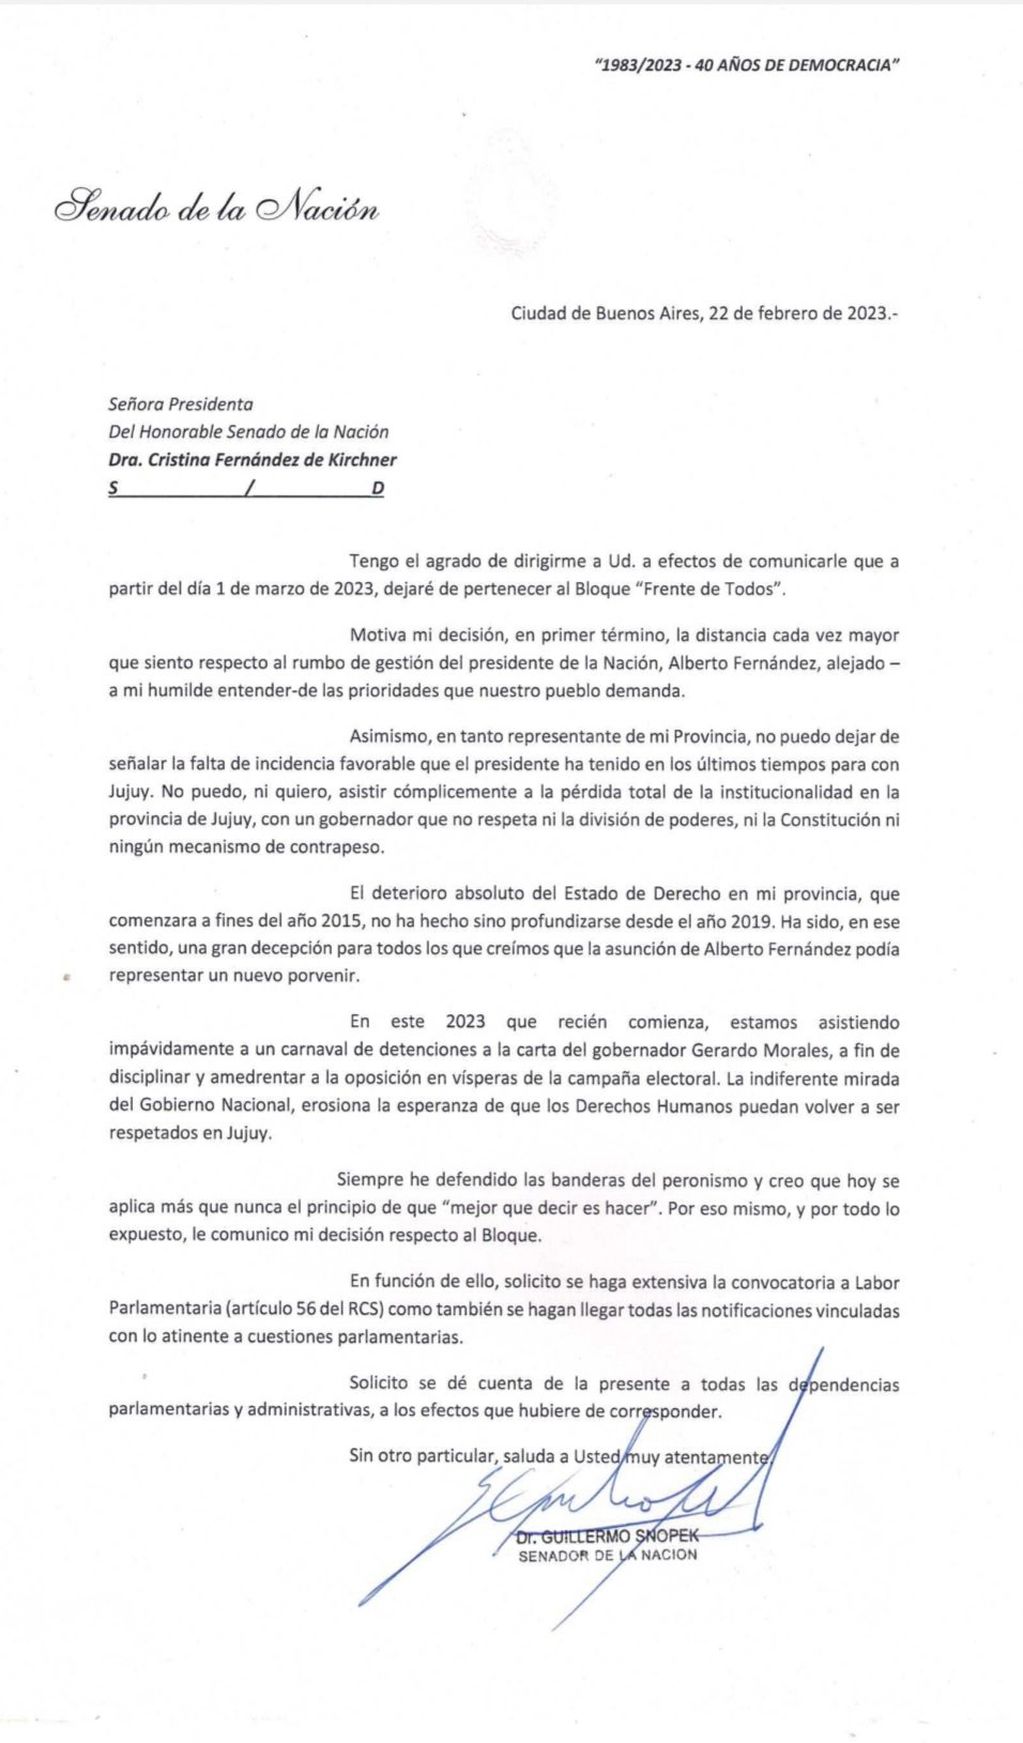 La carta que escribió el legislador jujeño Guillermo Snopek.